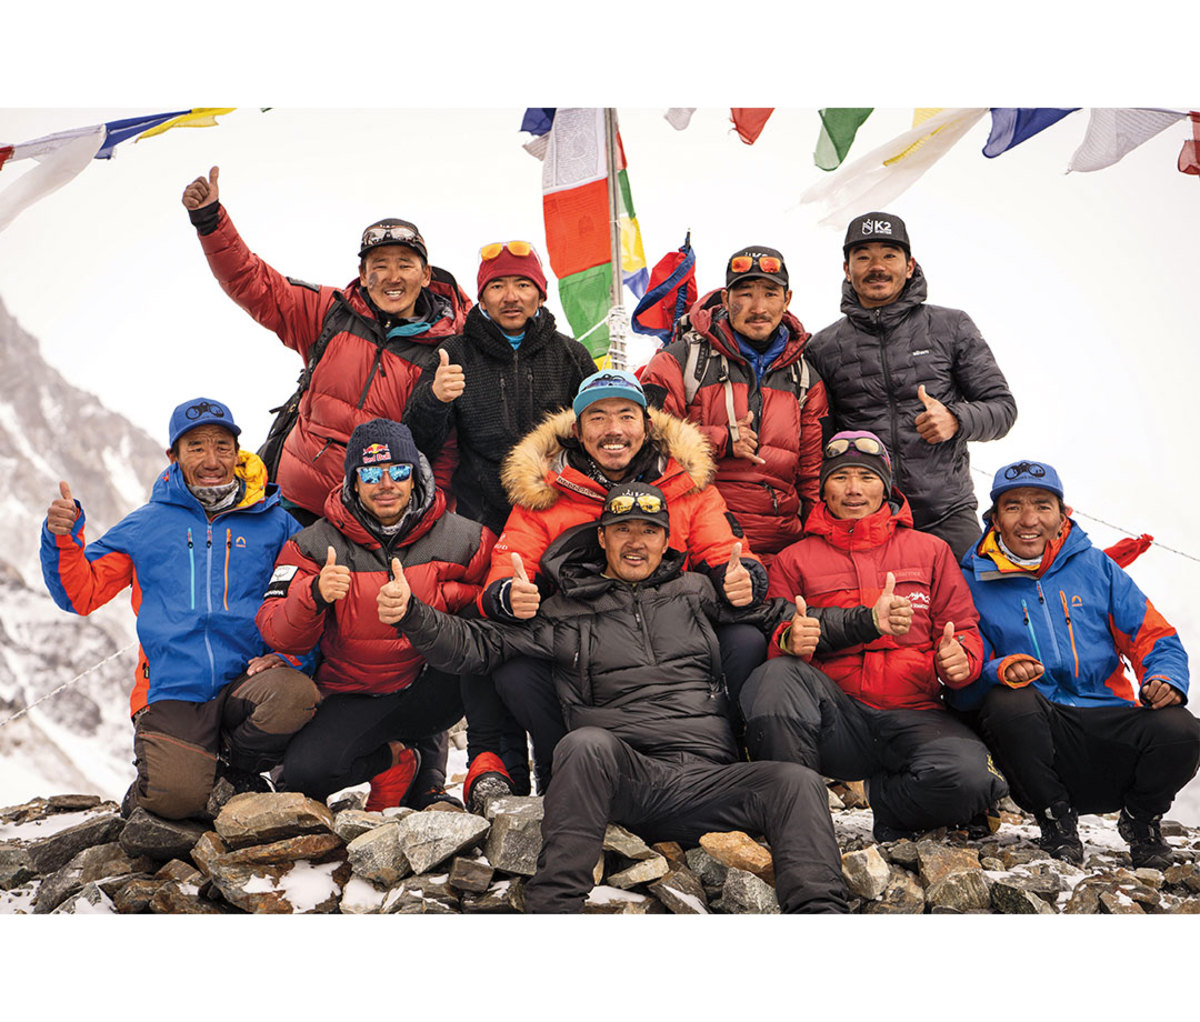 Nepal team poses at summit